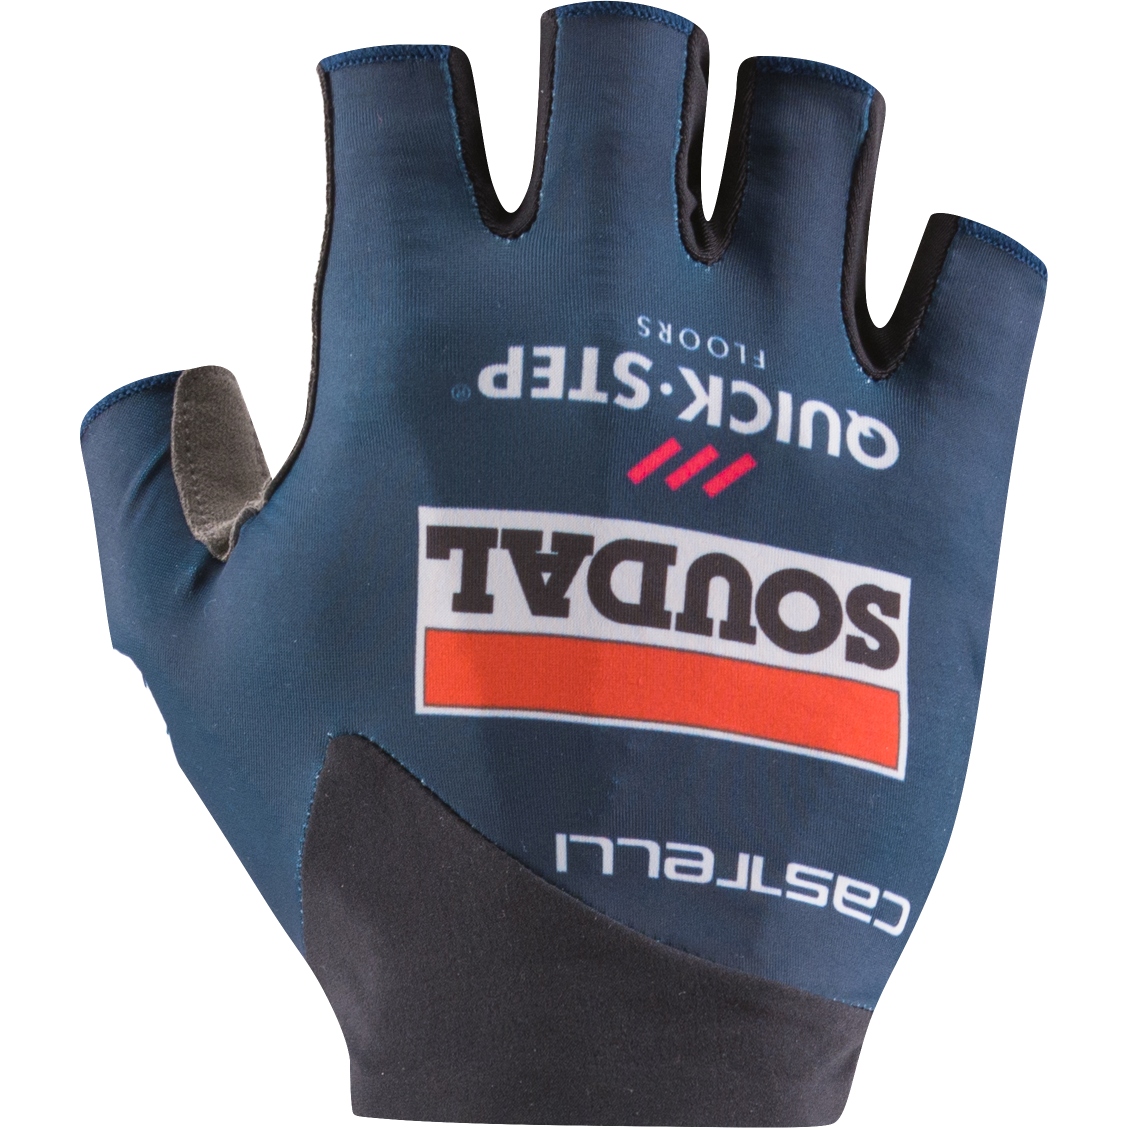 Productfoto van Castelli Competizione 2 Handschoenen met Korte Vingers Team Soudal Quick-Step - belgian blue 424